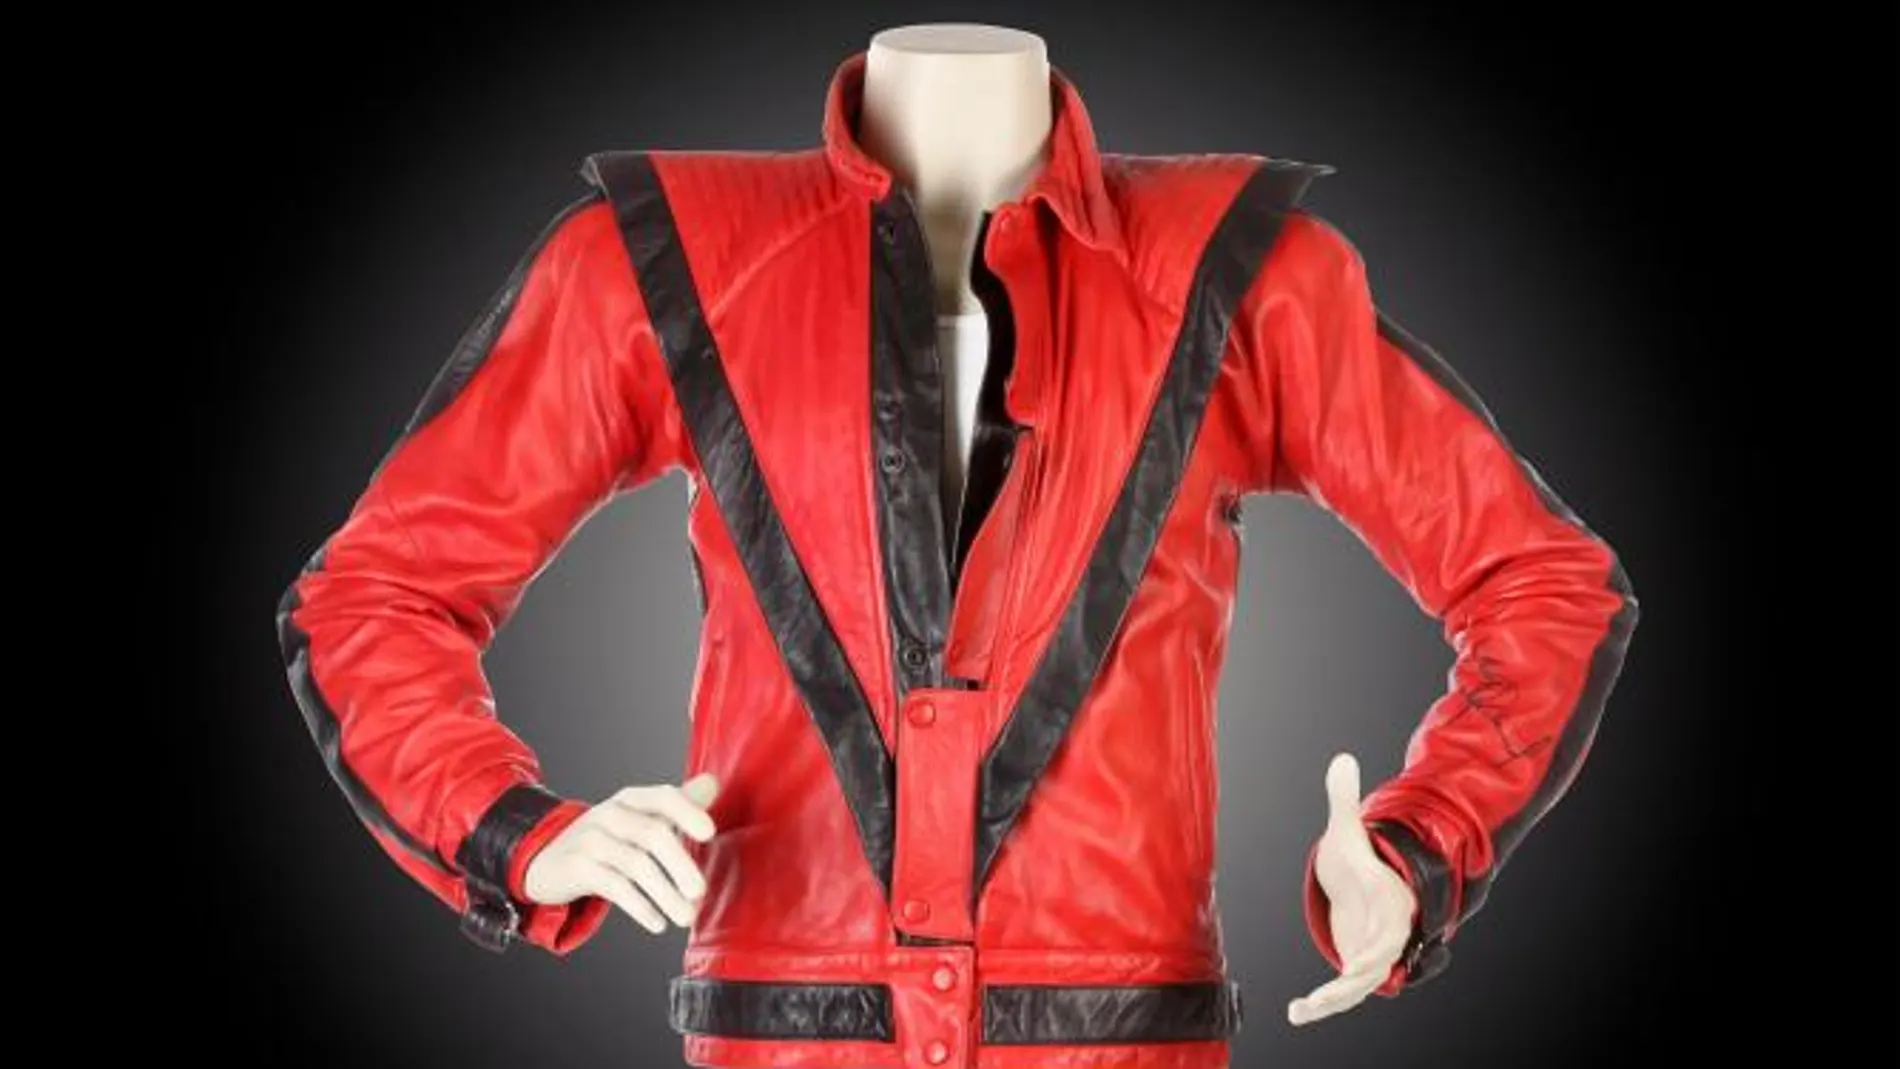 La chaqueta de Michael Jackson, vendida por más de 1 millón de euros